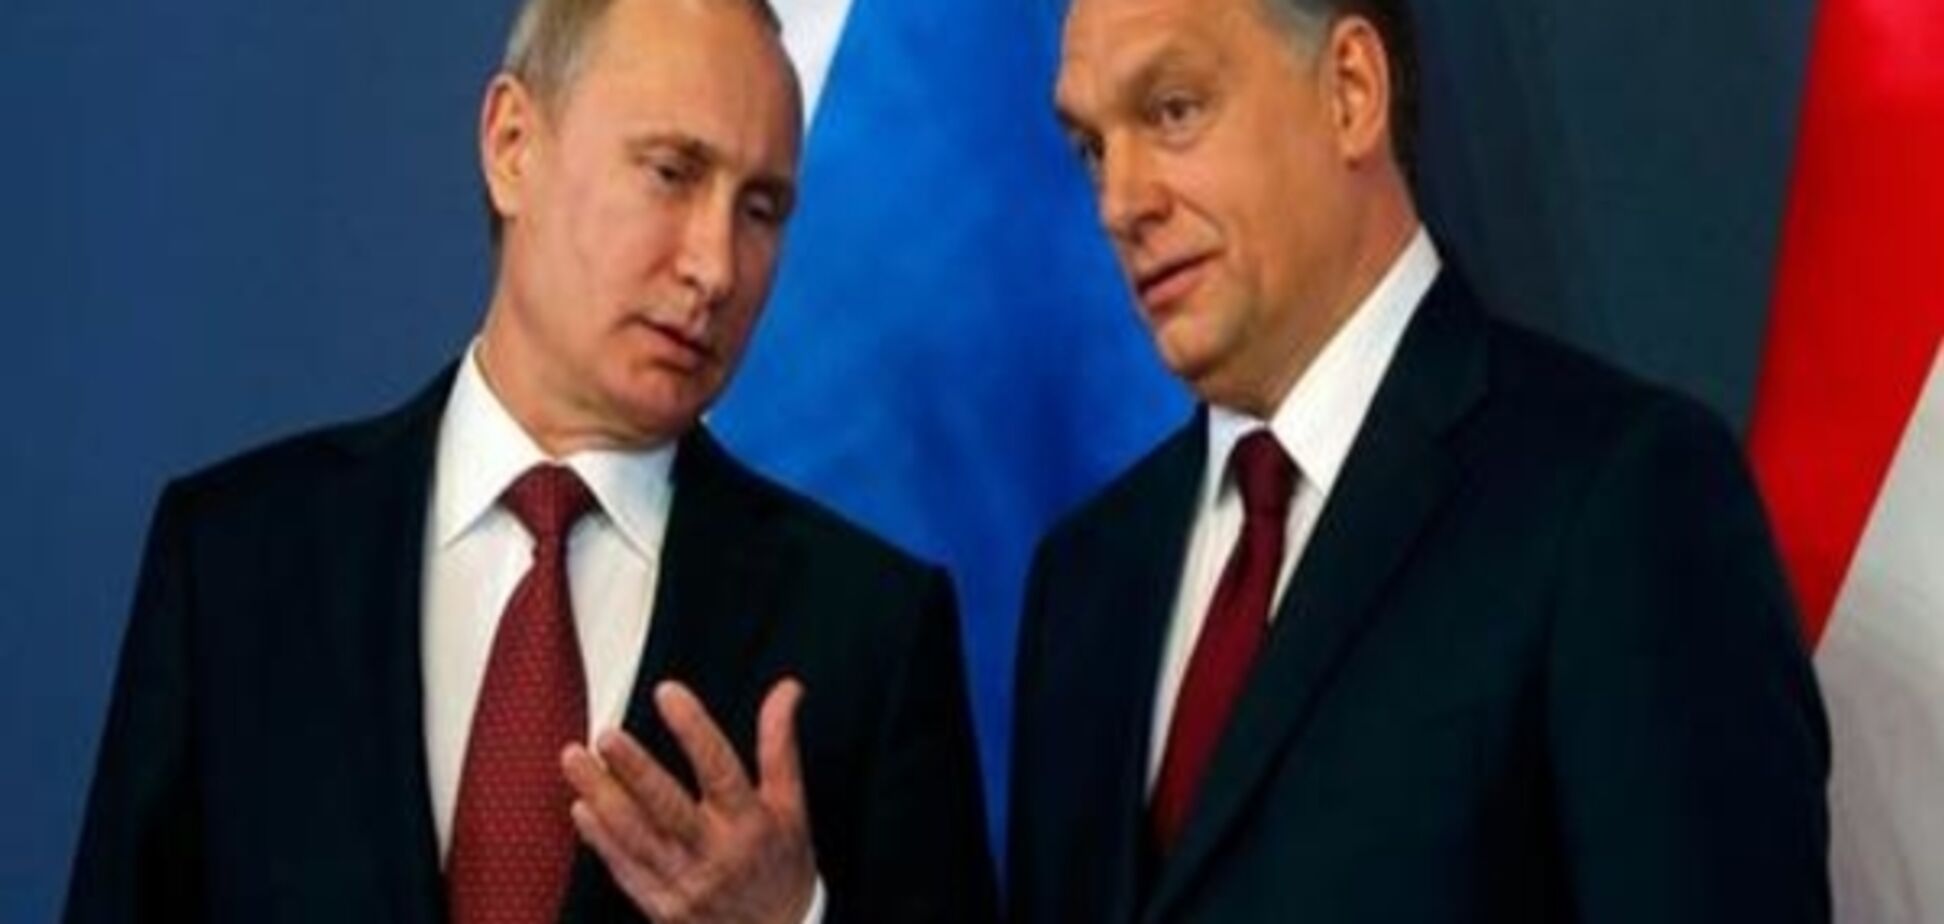 Коментар: Путін в гостях у Орбана - символічна зустріч 'любих друзів'